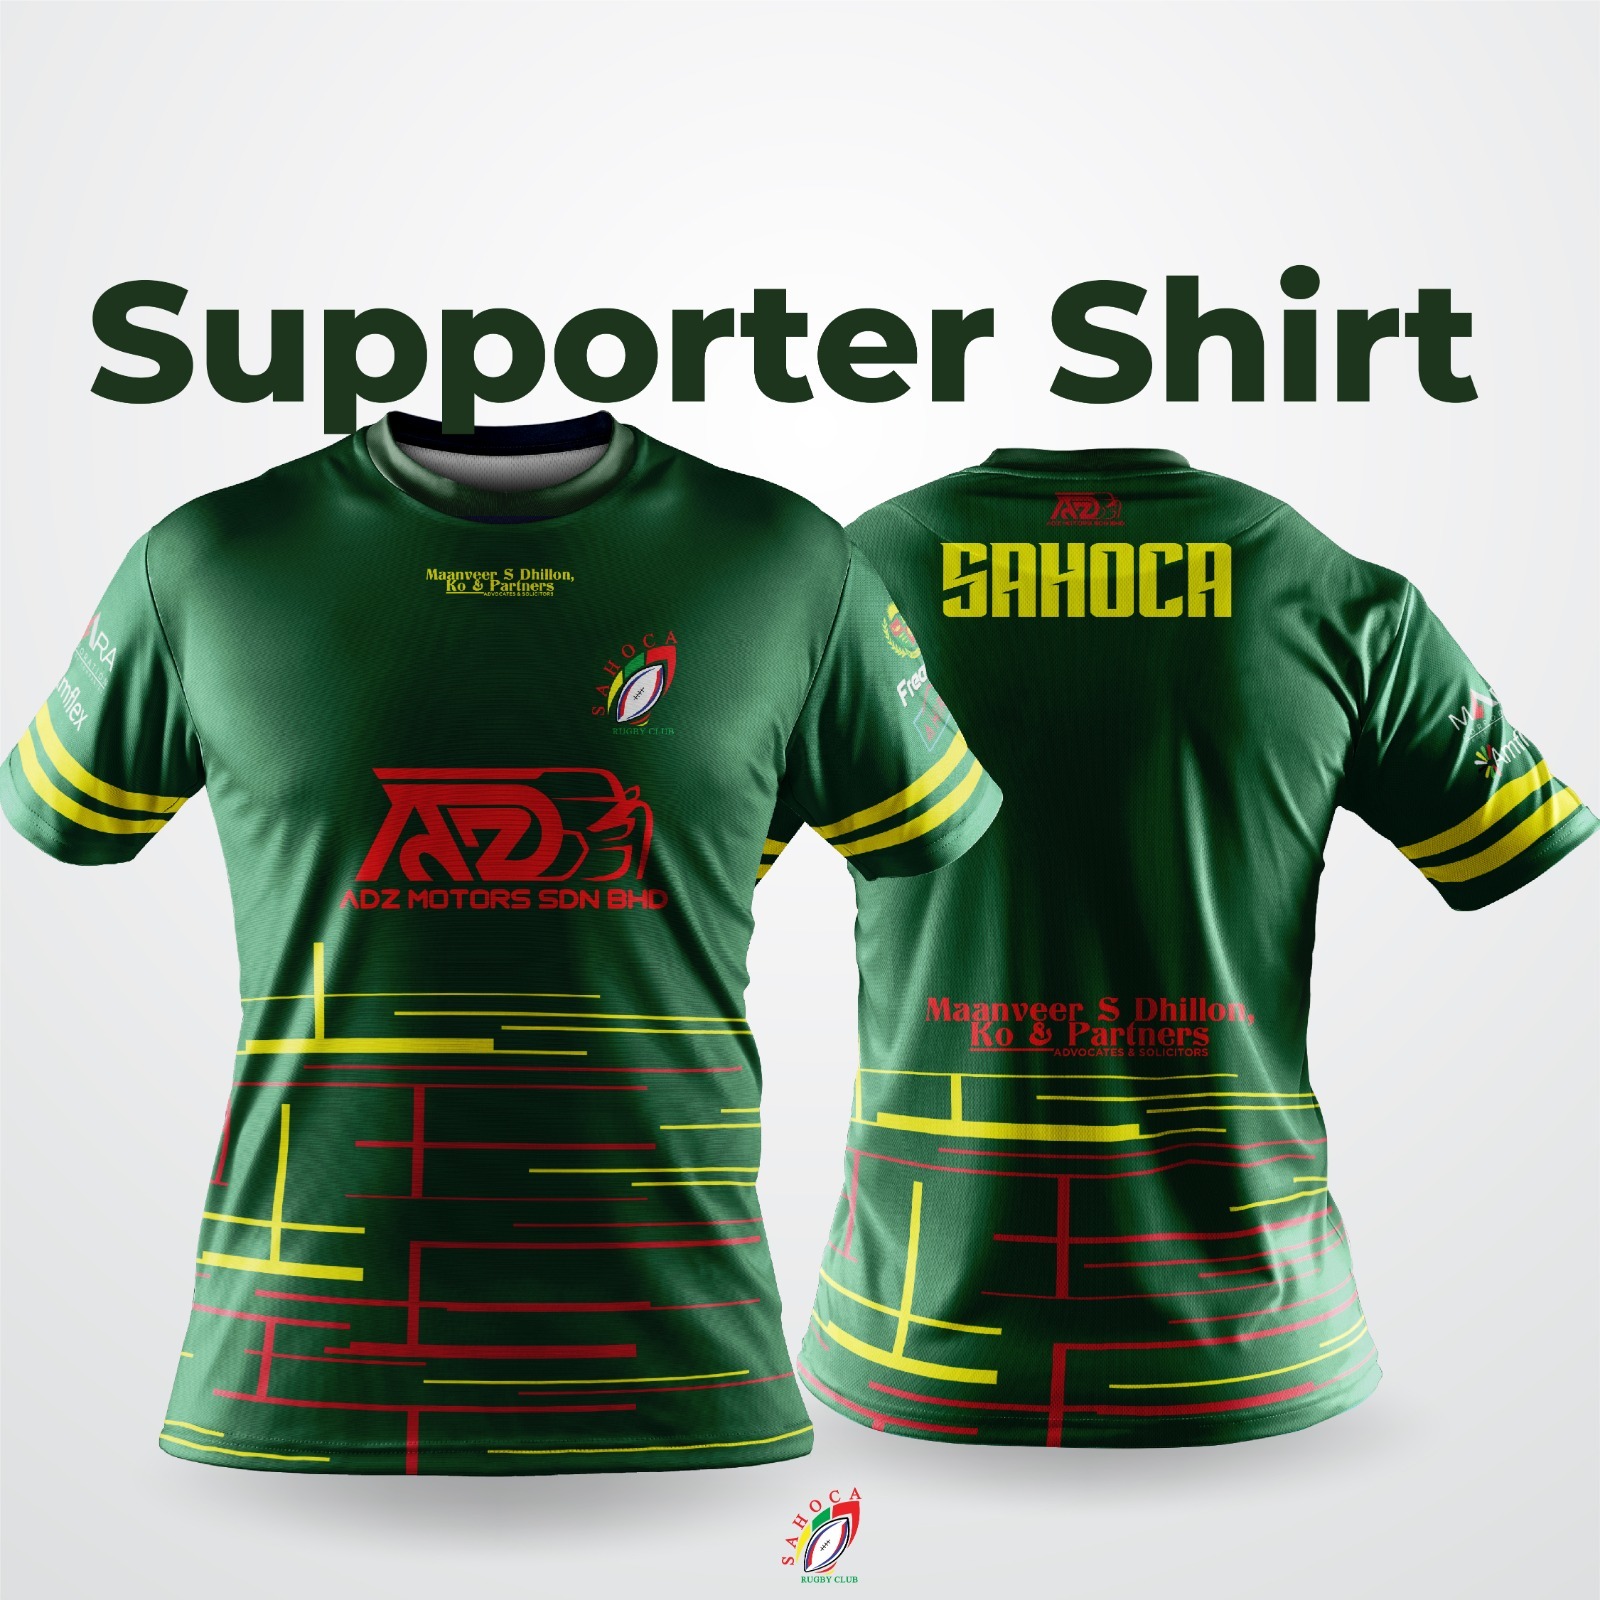 Supporter Shirt Green